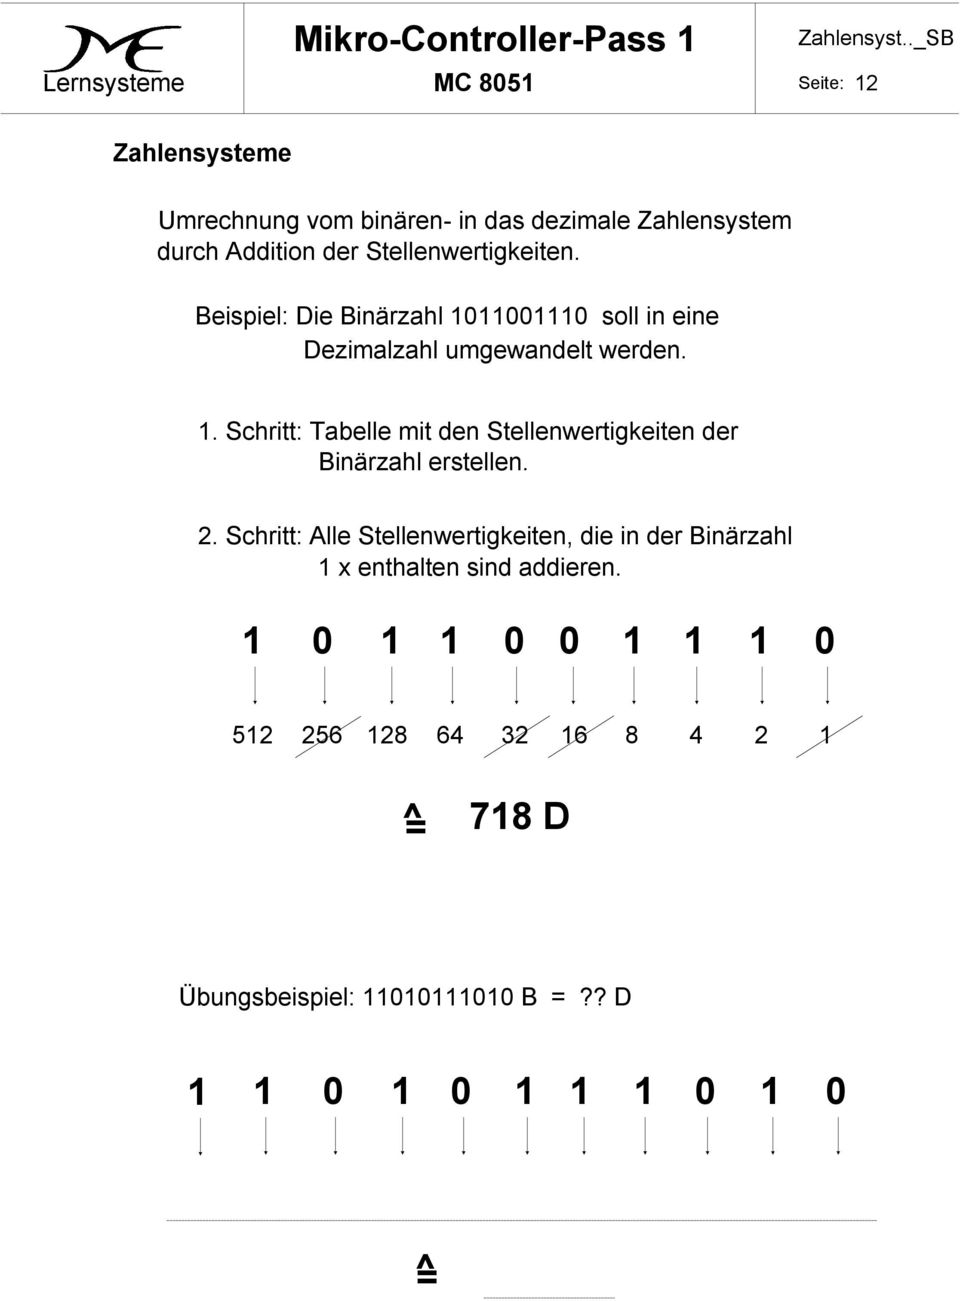 2. Schritt: Alle Stellenwertigkeiten, die in der Binärzahl 1 x enthalten sind addieren.